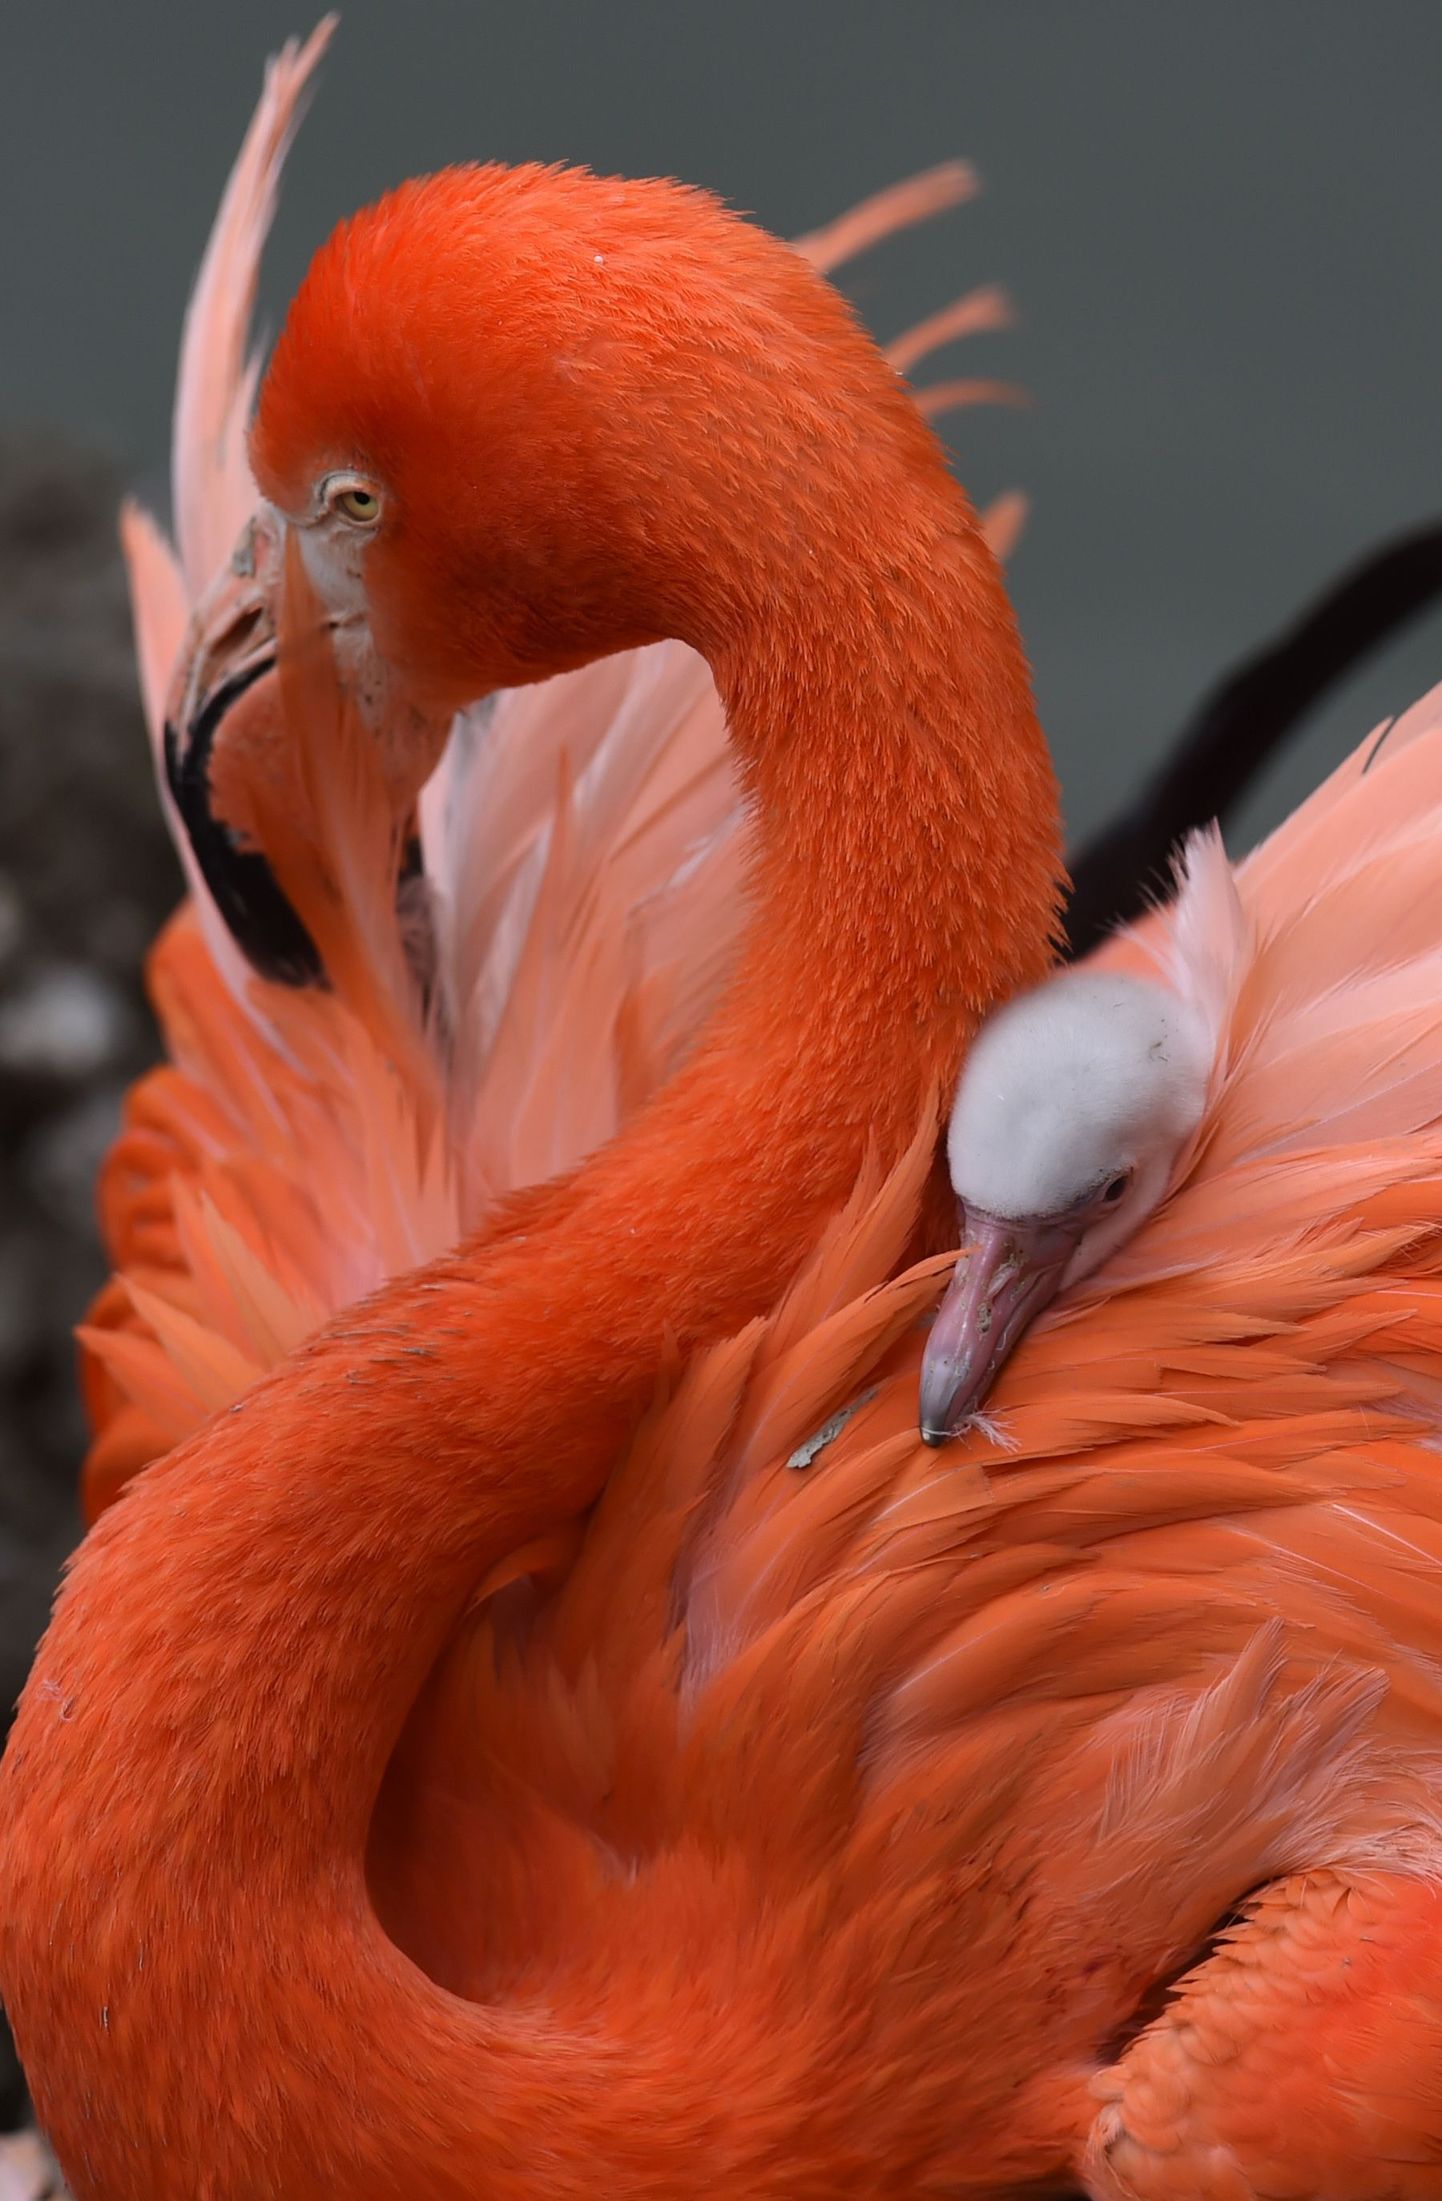 Flamingo. Pilt on illustreeriv.